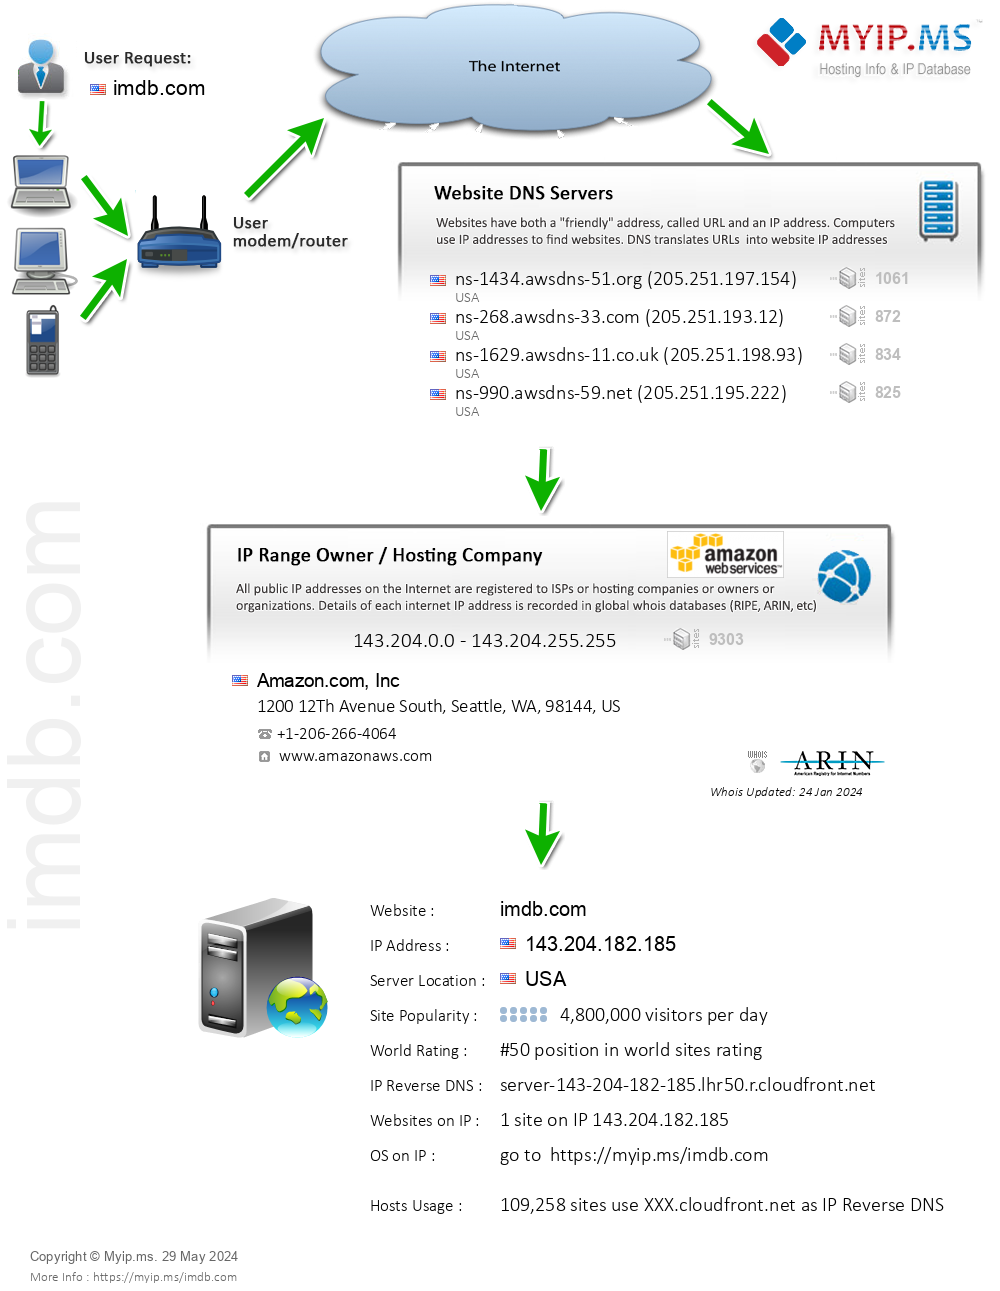 Imdb.com - Website Hosting Visual IP Diagram